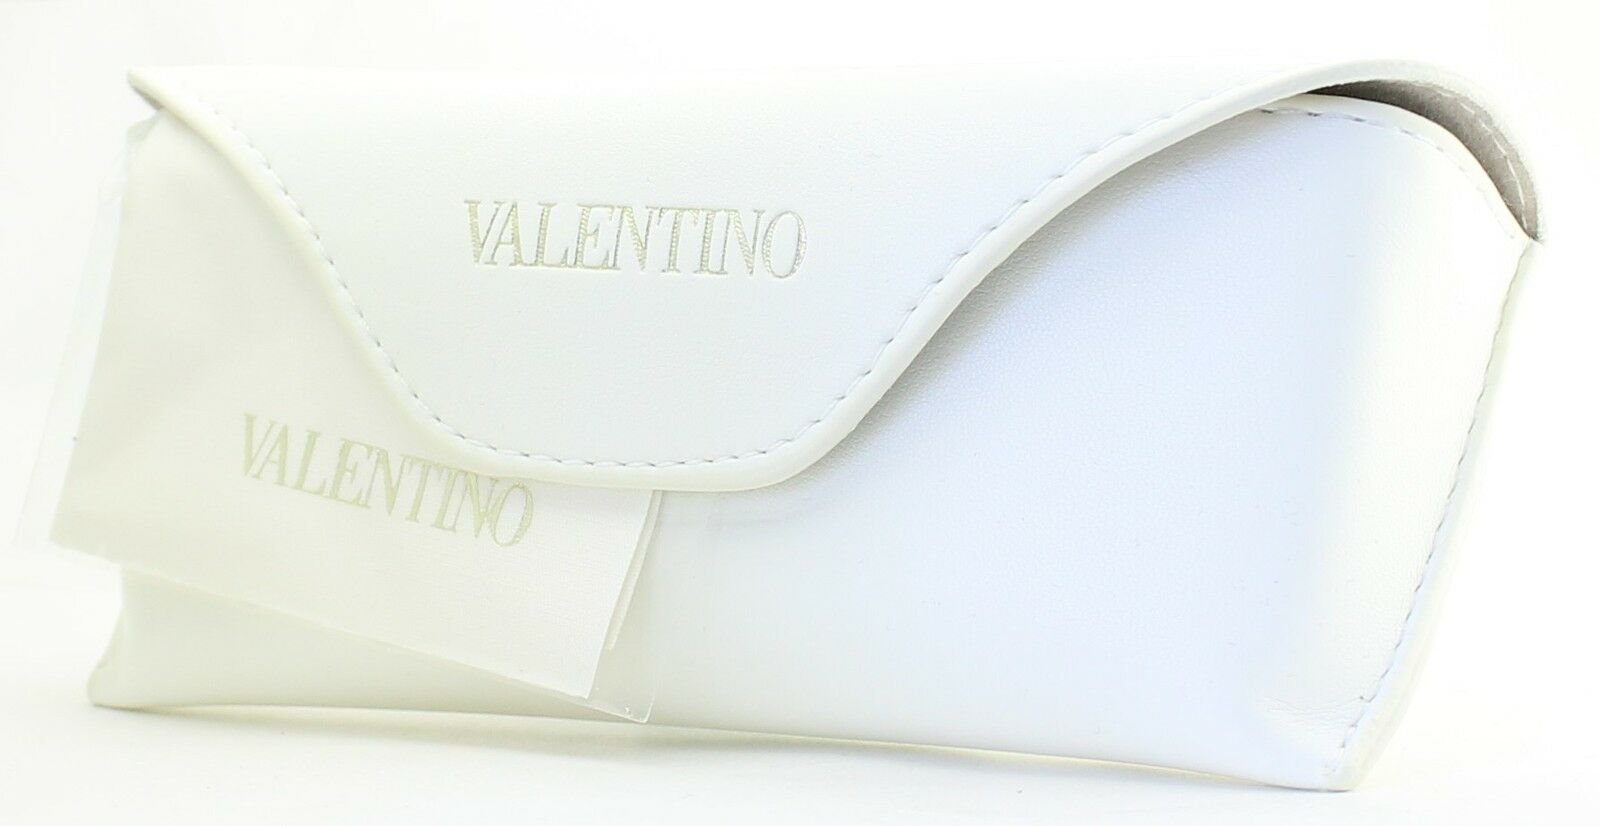 VALENTINO V26212R 215 Eyewear FRAMES RX Optical Eyeglasses Glasses Italy - BNIB